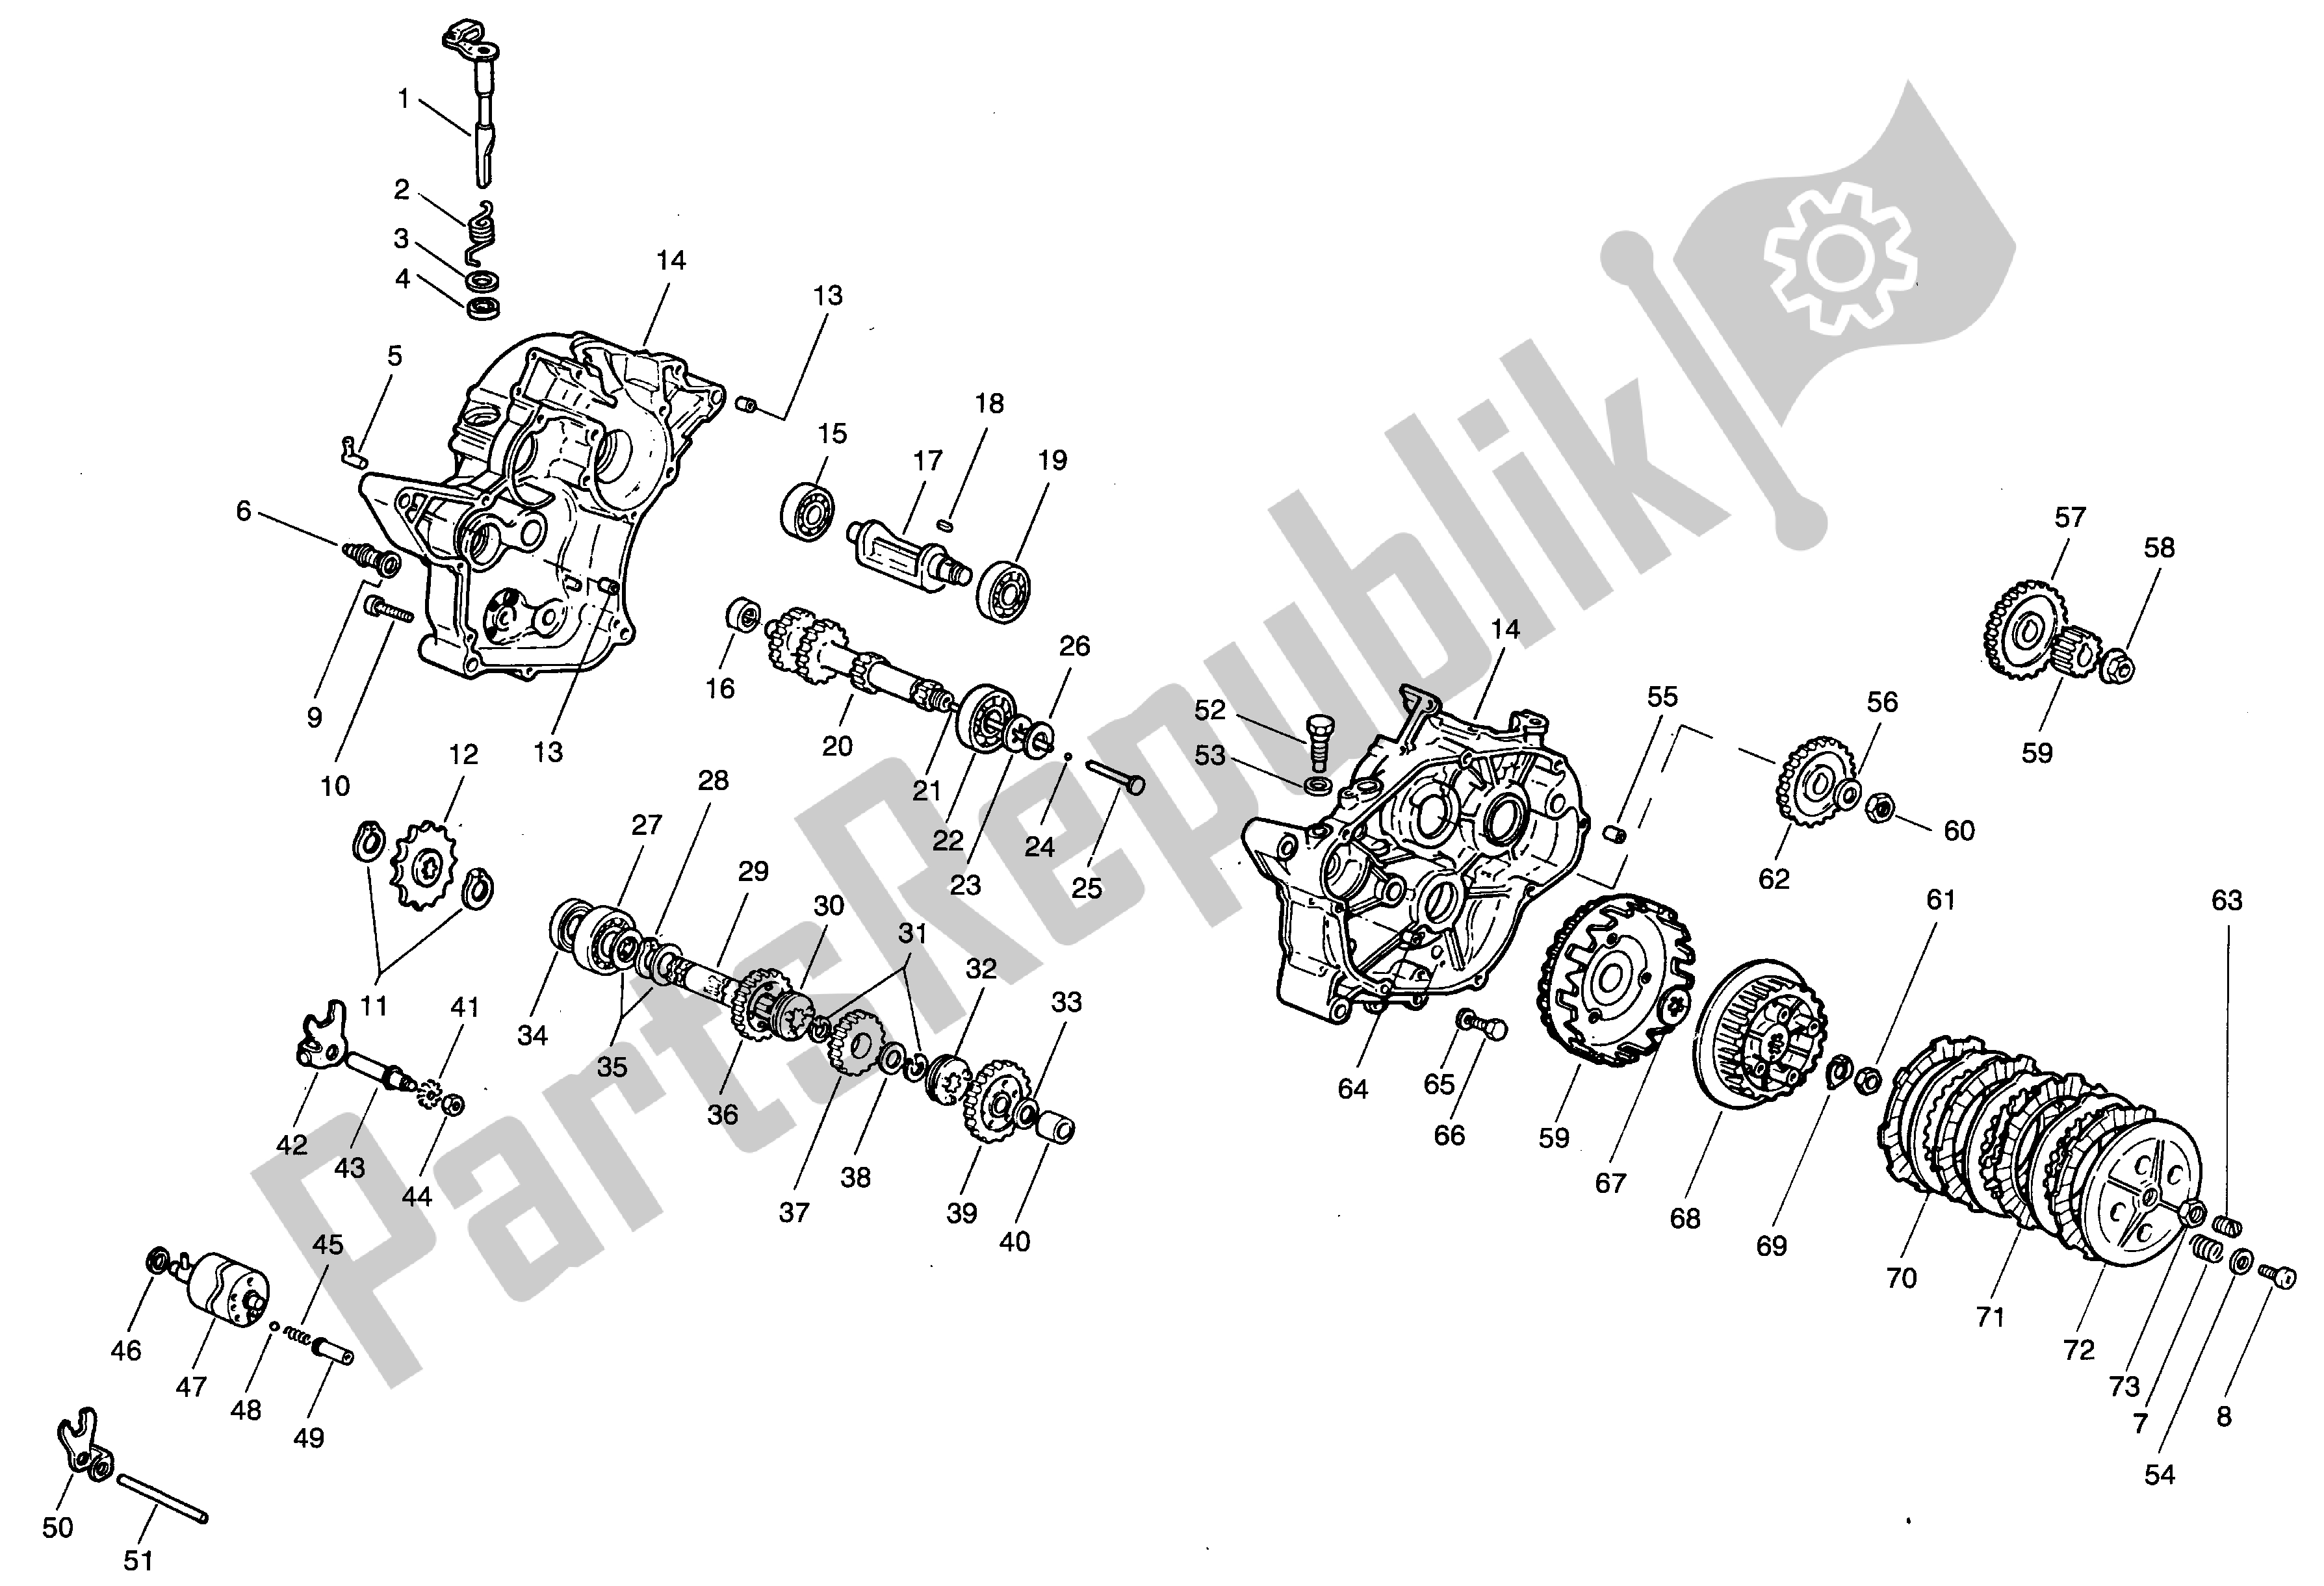 All parts for the Crankcase - Clutch - Trasmission of the Aprilia Minarelli 50 1990 - 1999